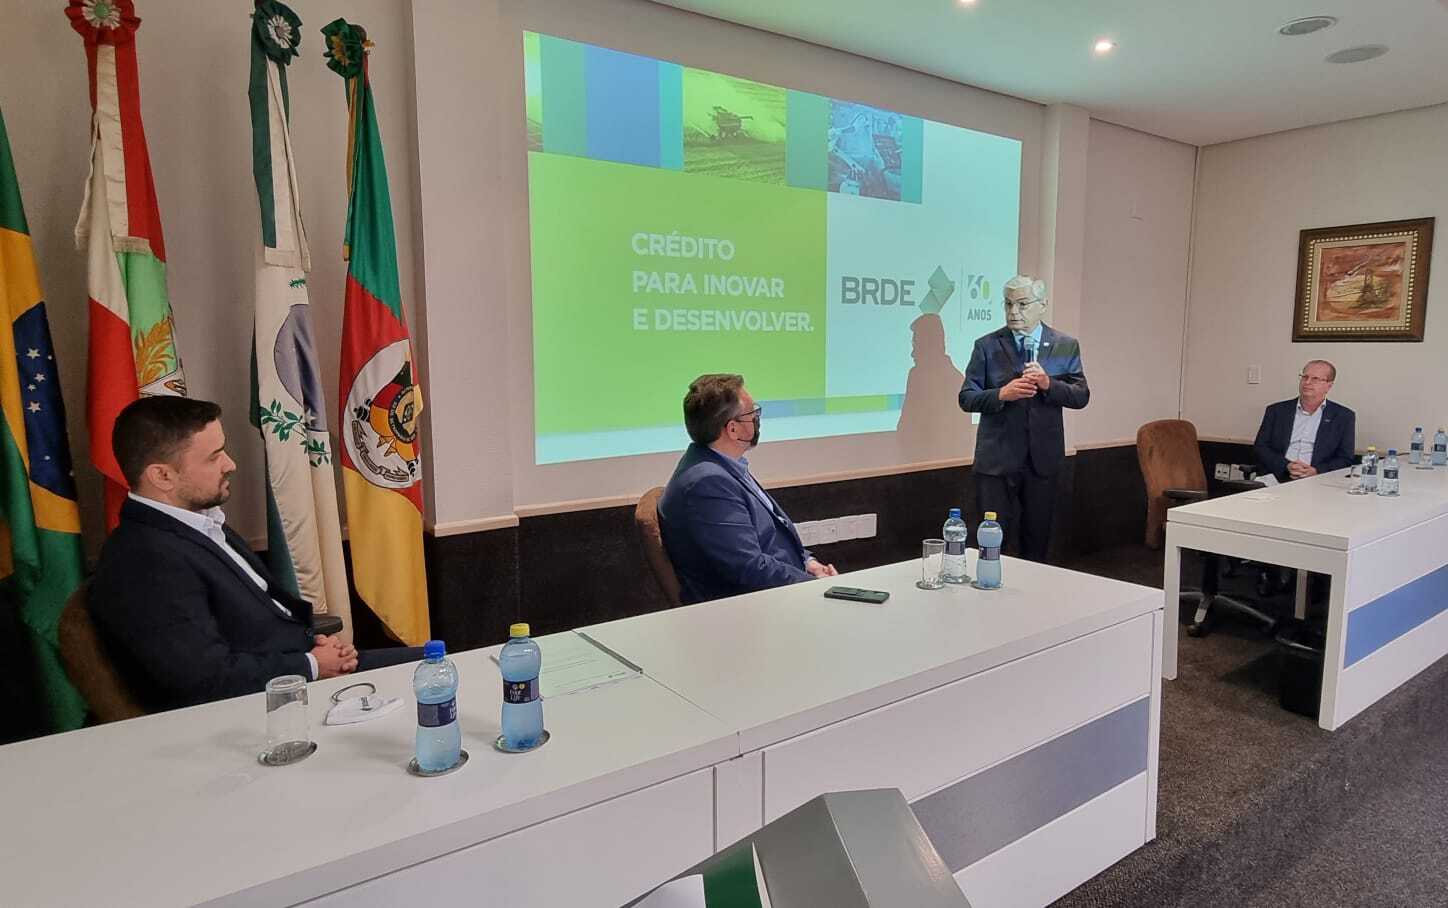 BRDE concede R$ 1,4 bilhão para empreendedores de Santa Catarina e supera meta do ano